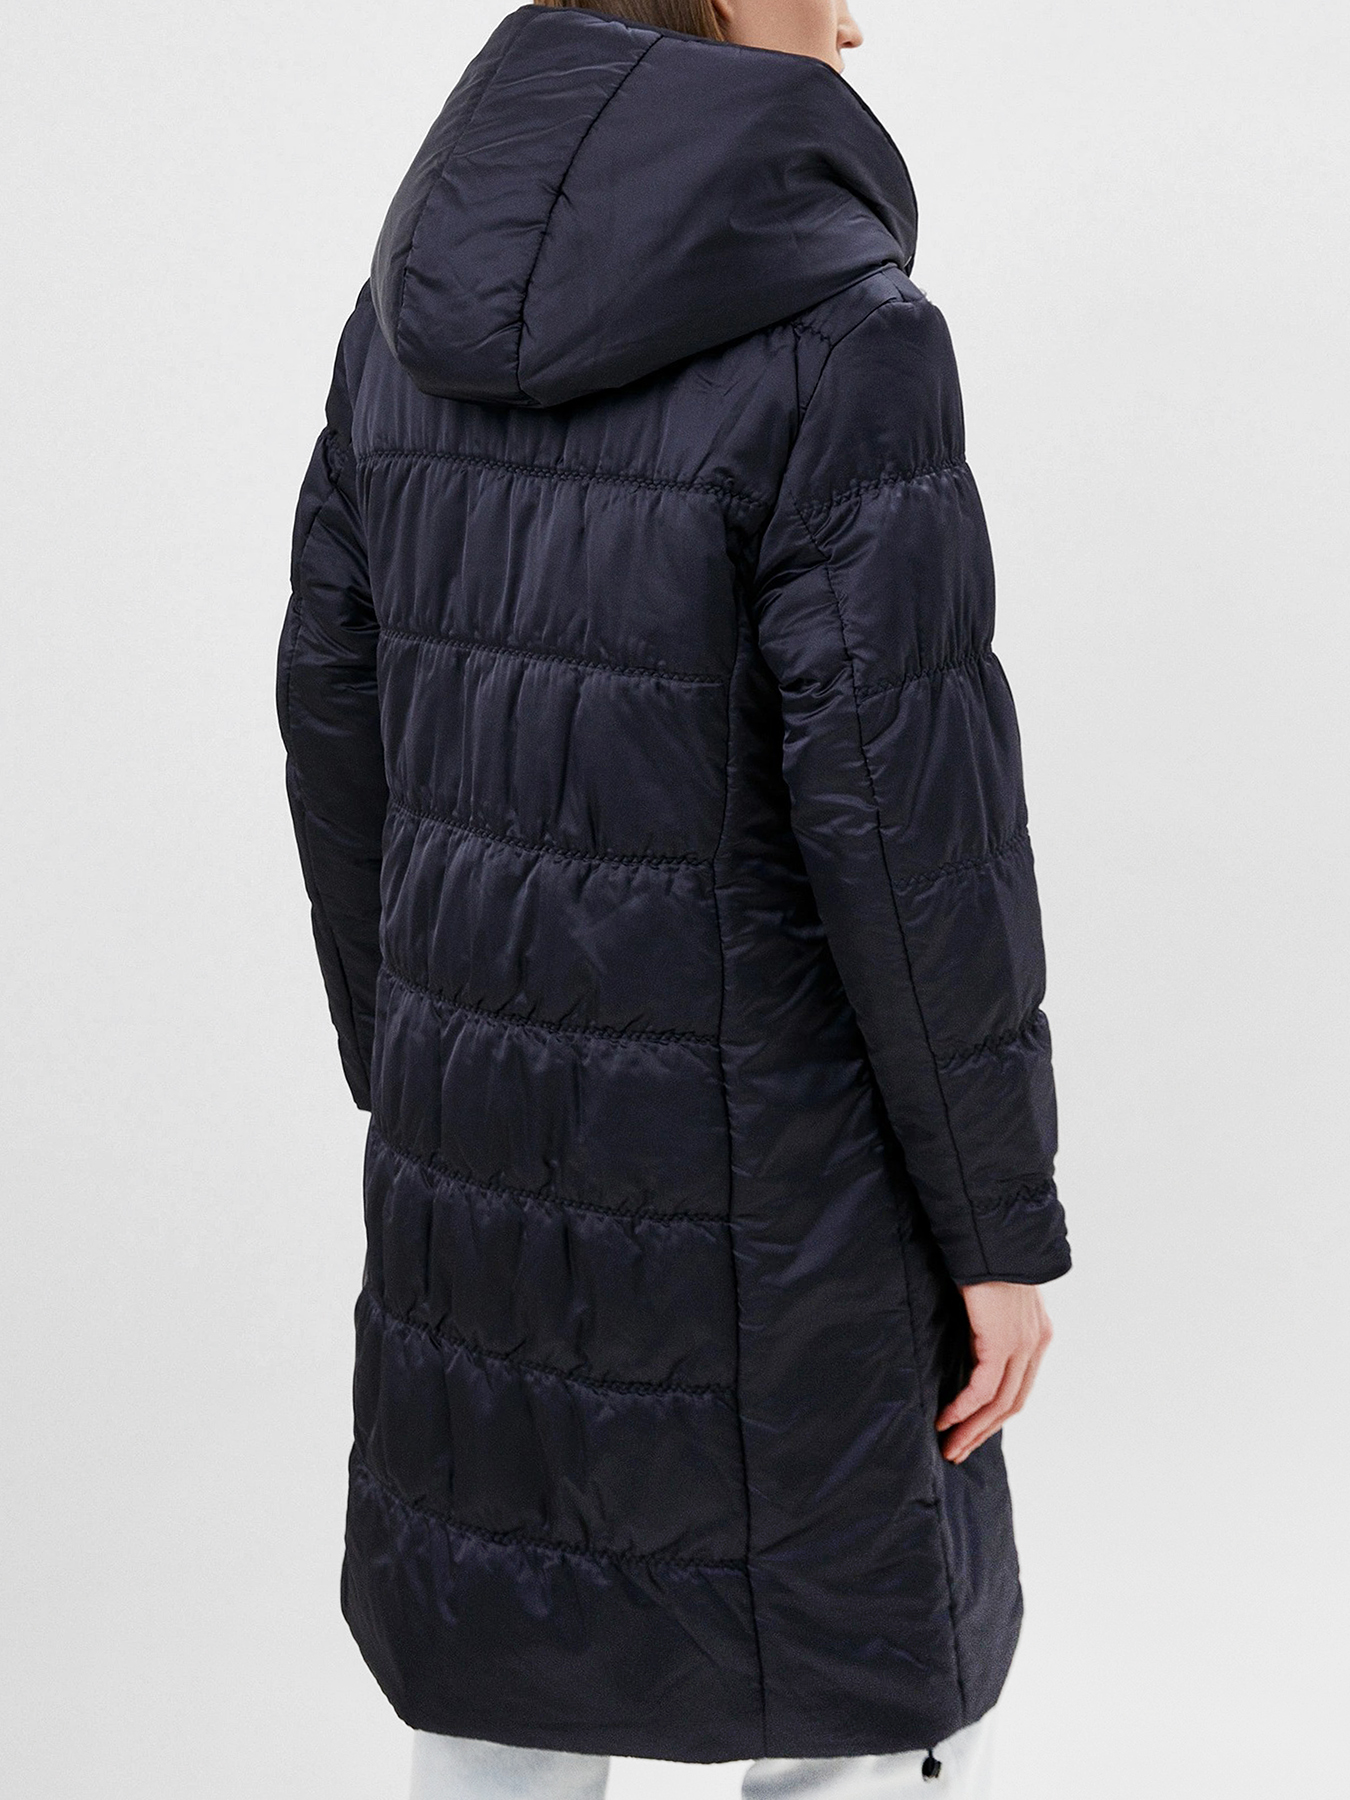 Пальто зимнее Dixi Coat 433576-020, цвет темно-синий, размер 44 - фото 2